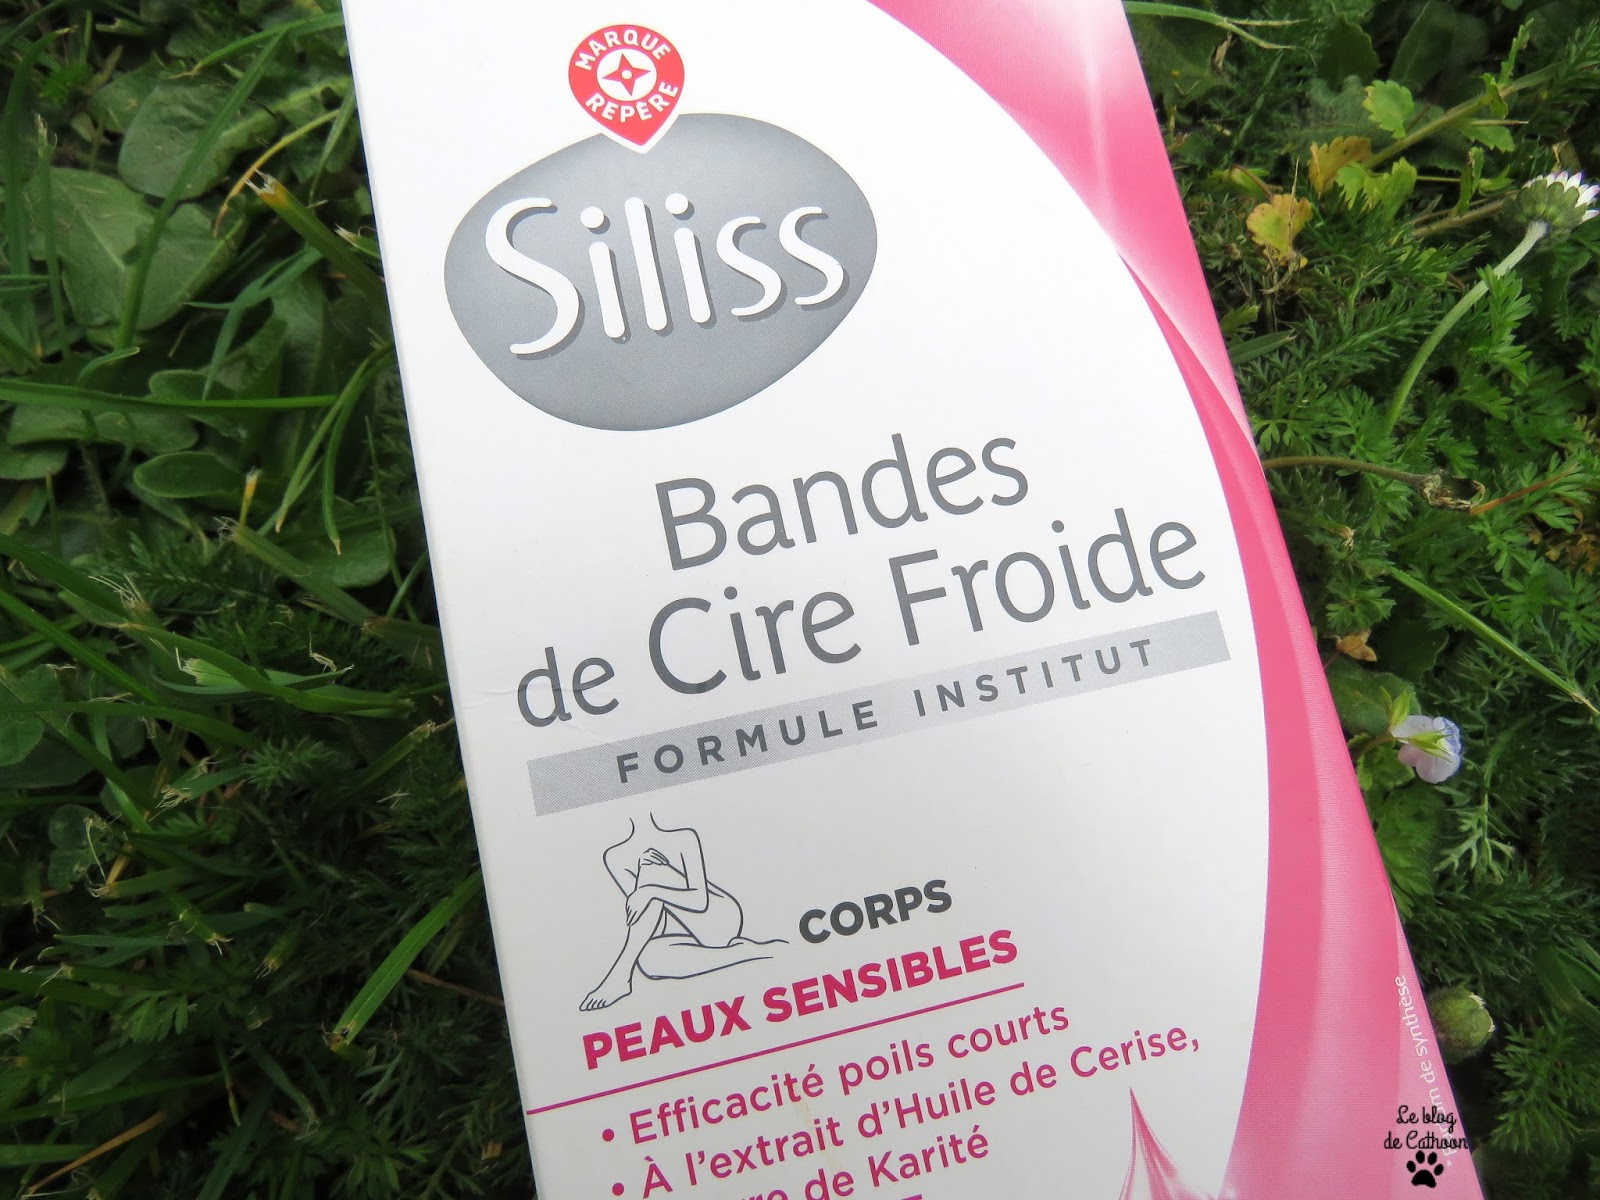 Bandes de Cire Froide - Formule Institut - Parfum Gourmand Grenade - Siliss Leclerc